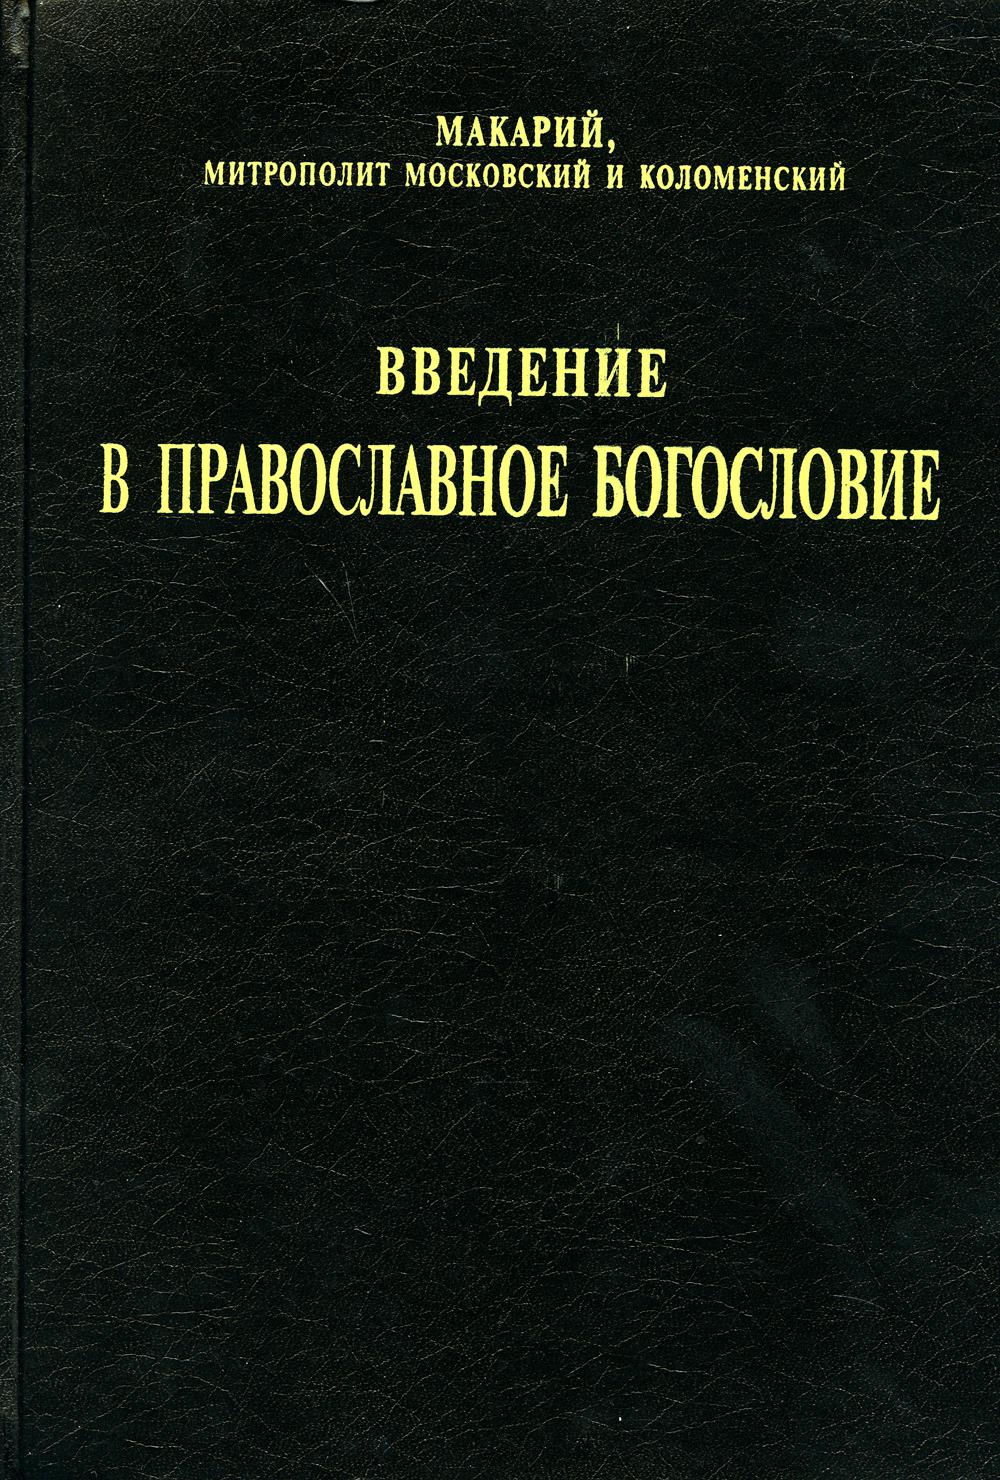 фото Книга введение в православное богословие сибирская благозвонница